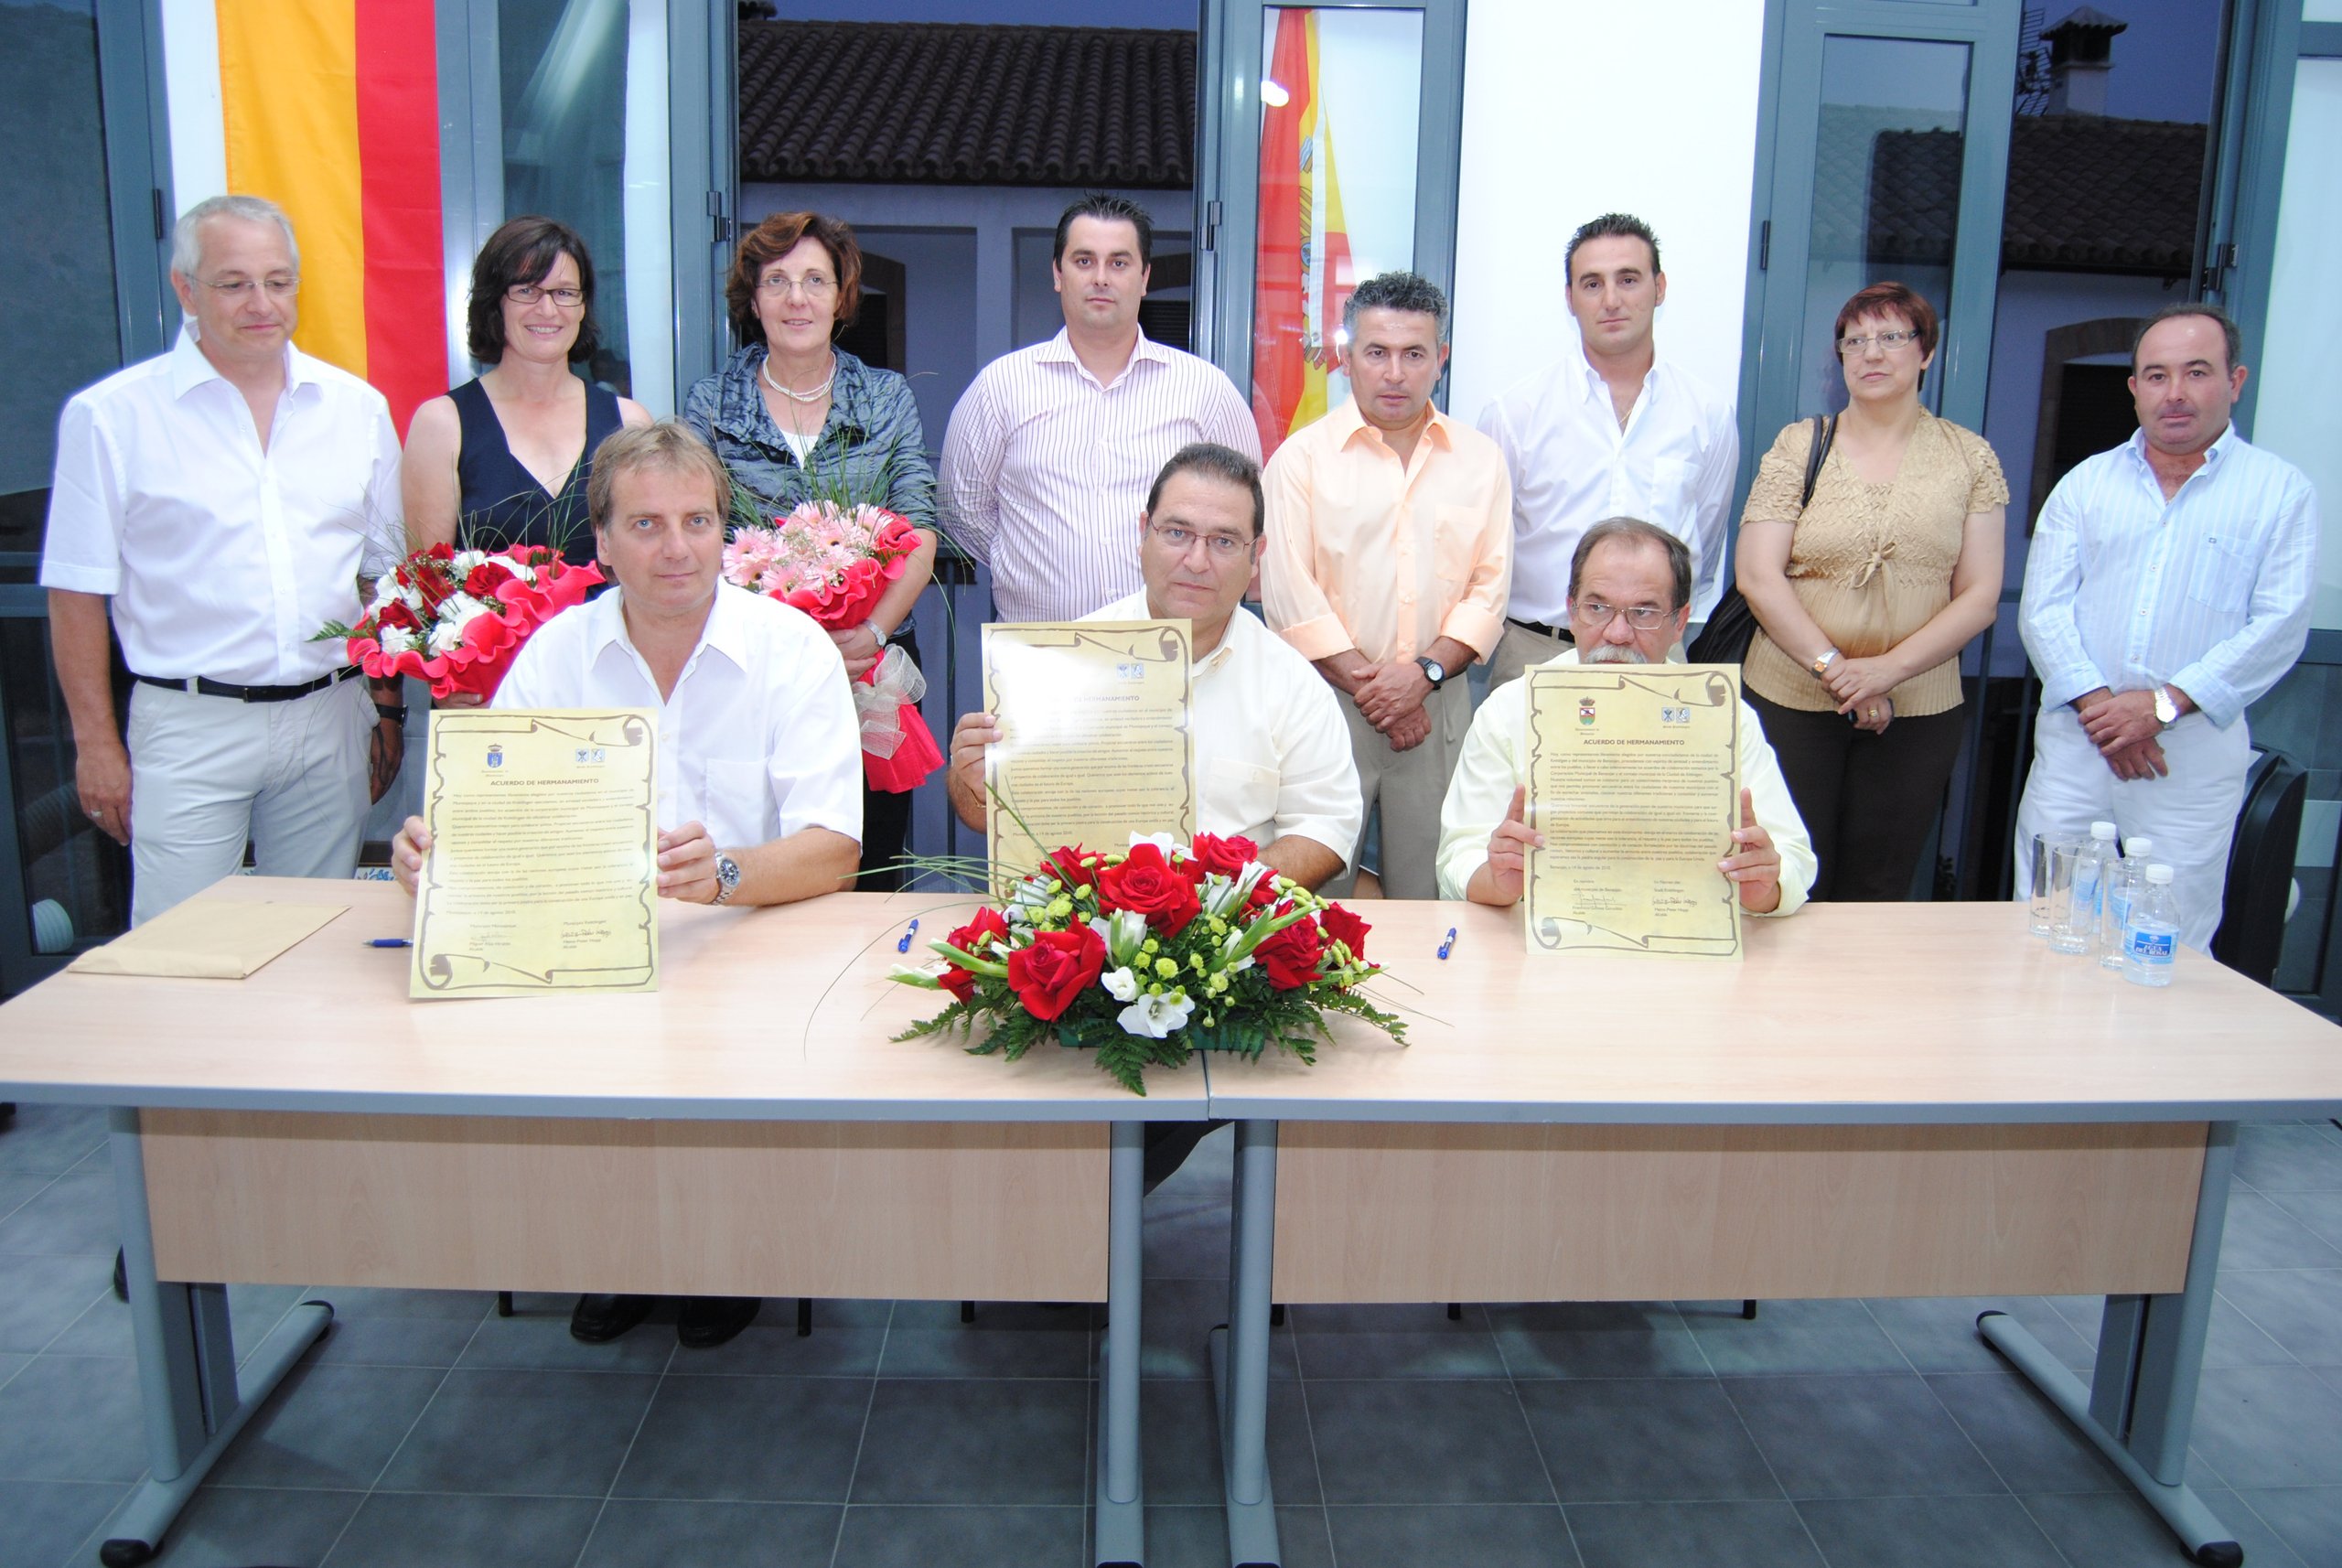 Unterzeichnung der Partnerschaftsurkunde im Rahmen eines Empfanges in Montejaque